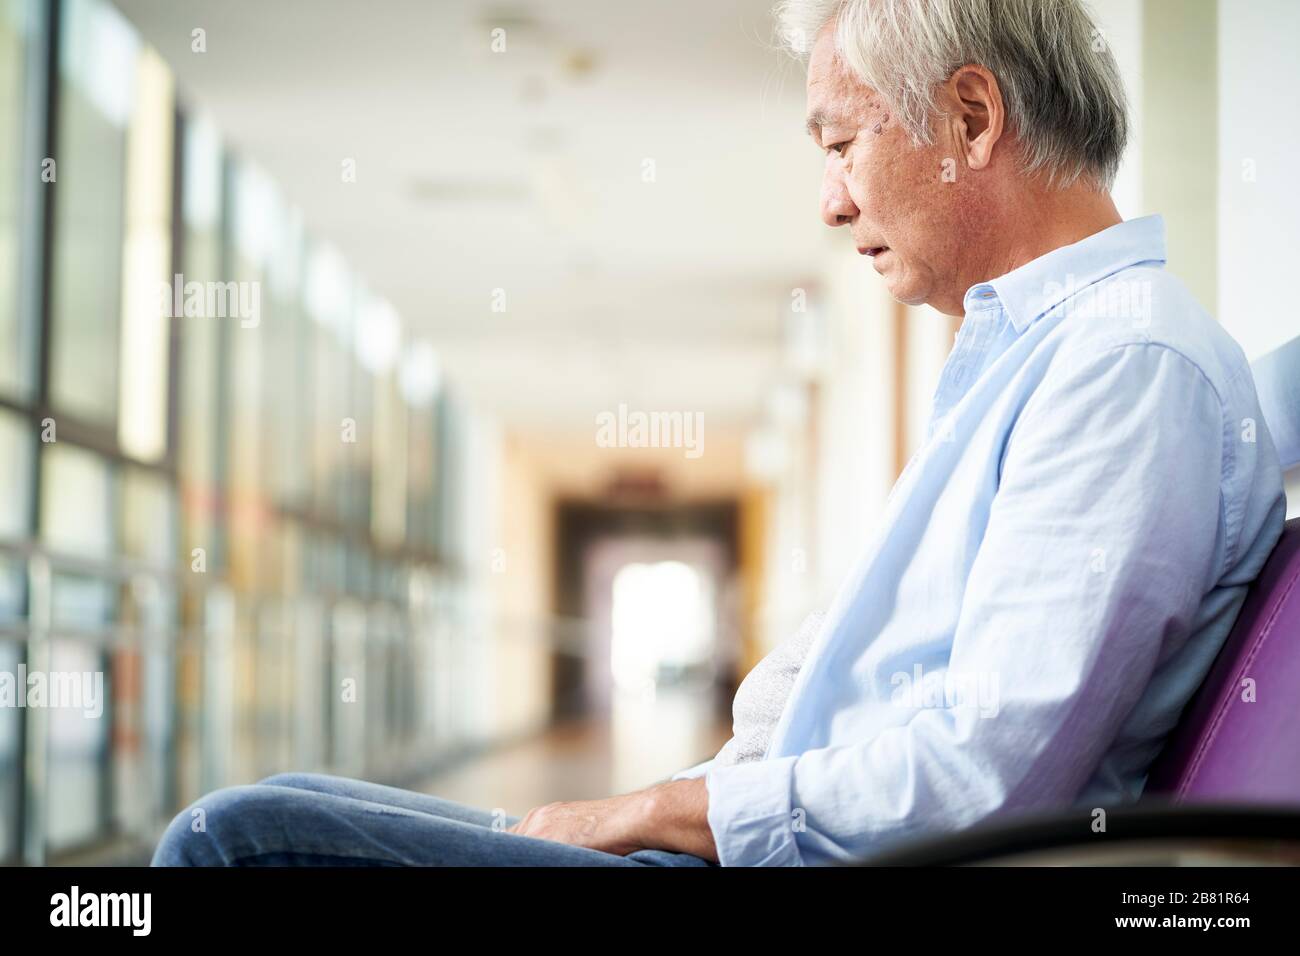 triste e devastato uomo anziano asiatico seduto da solo in corridoio vuoto dell'ospedale, testa giù Foto Stock